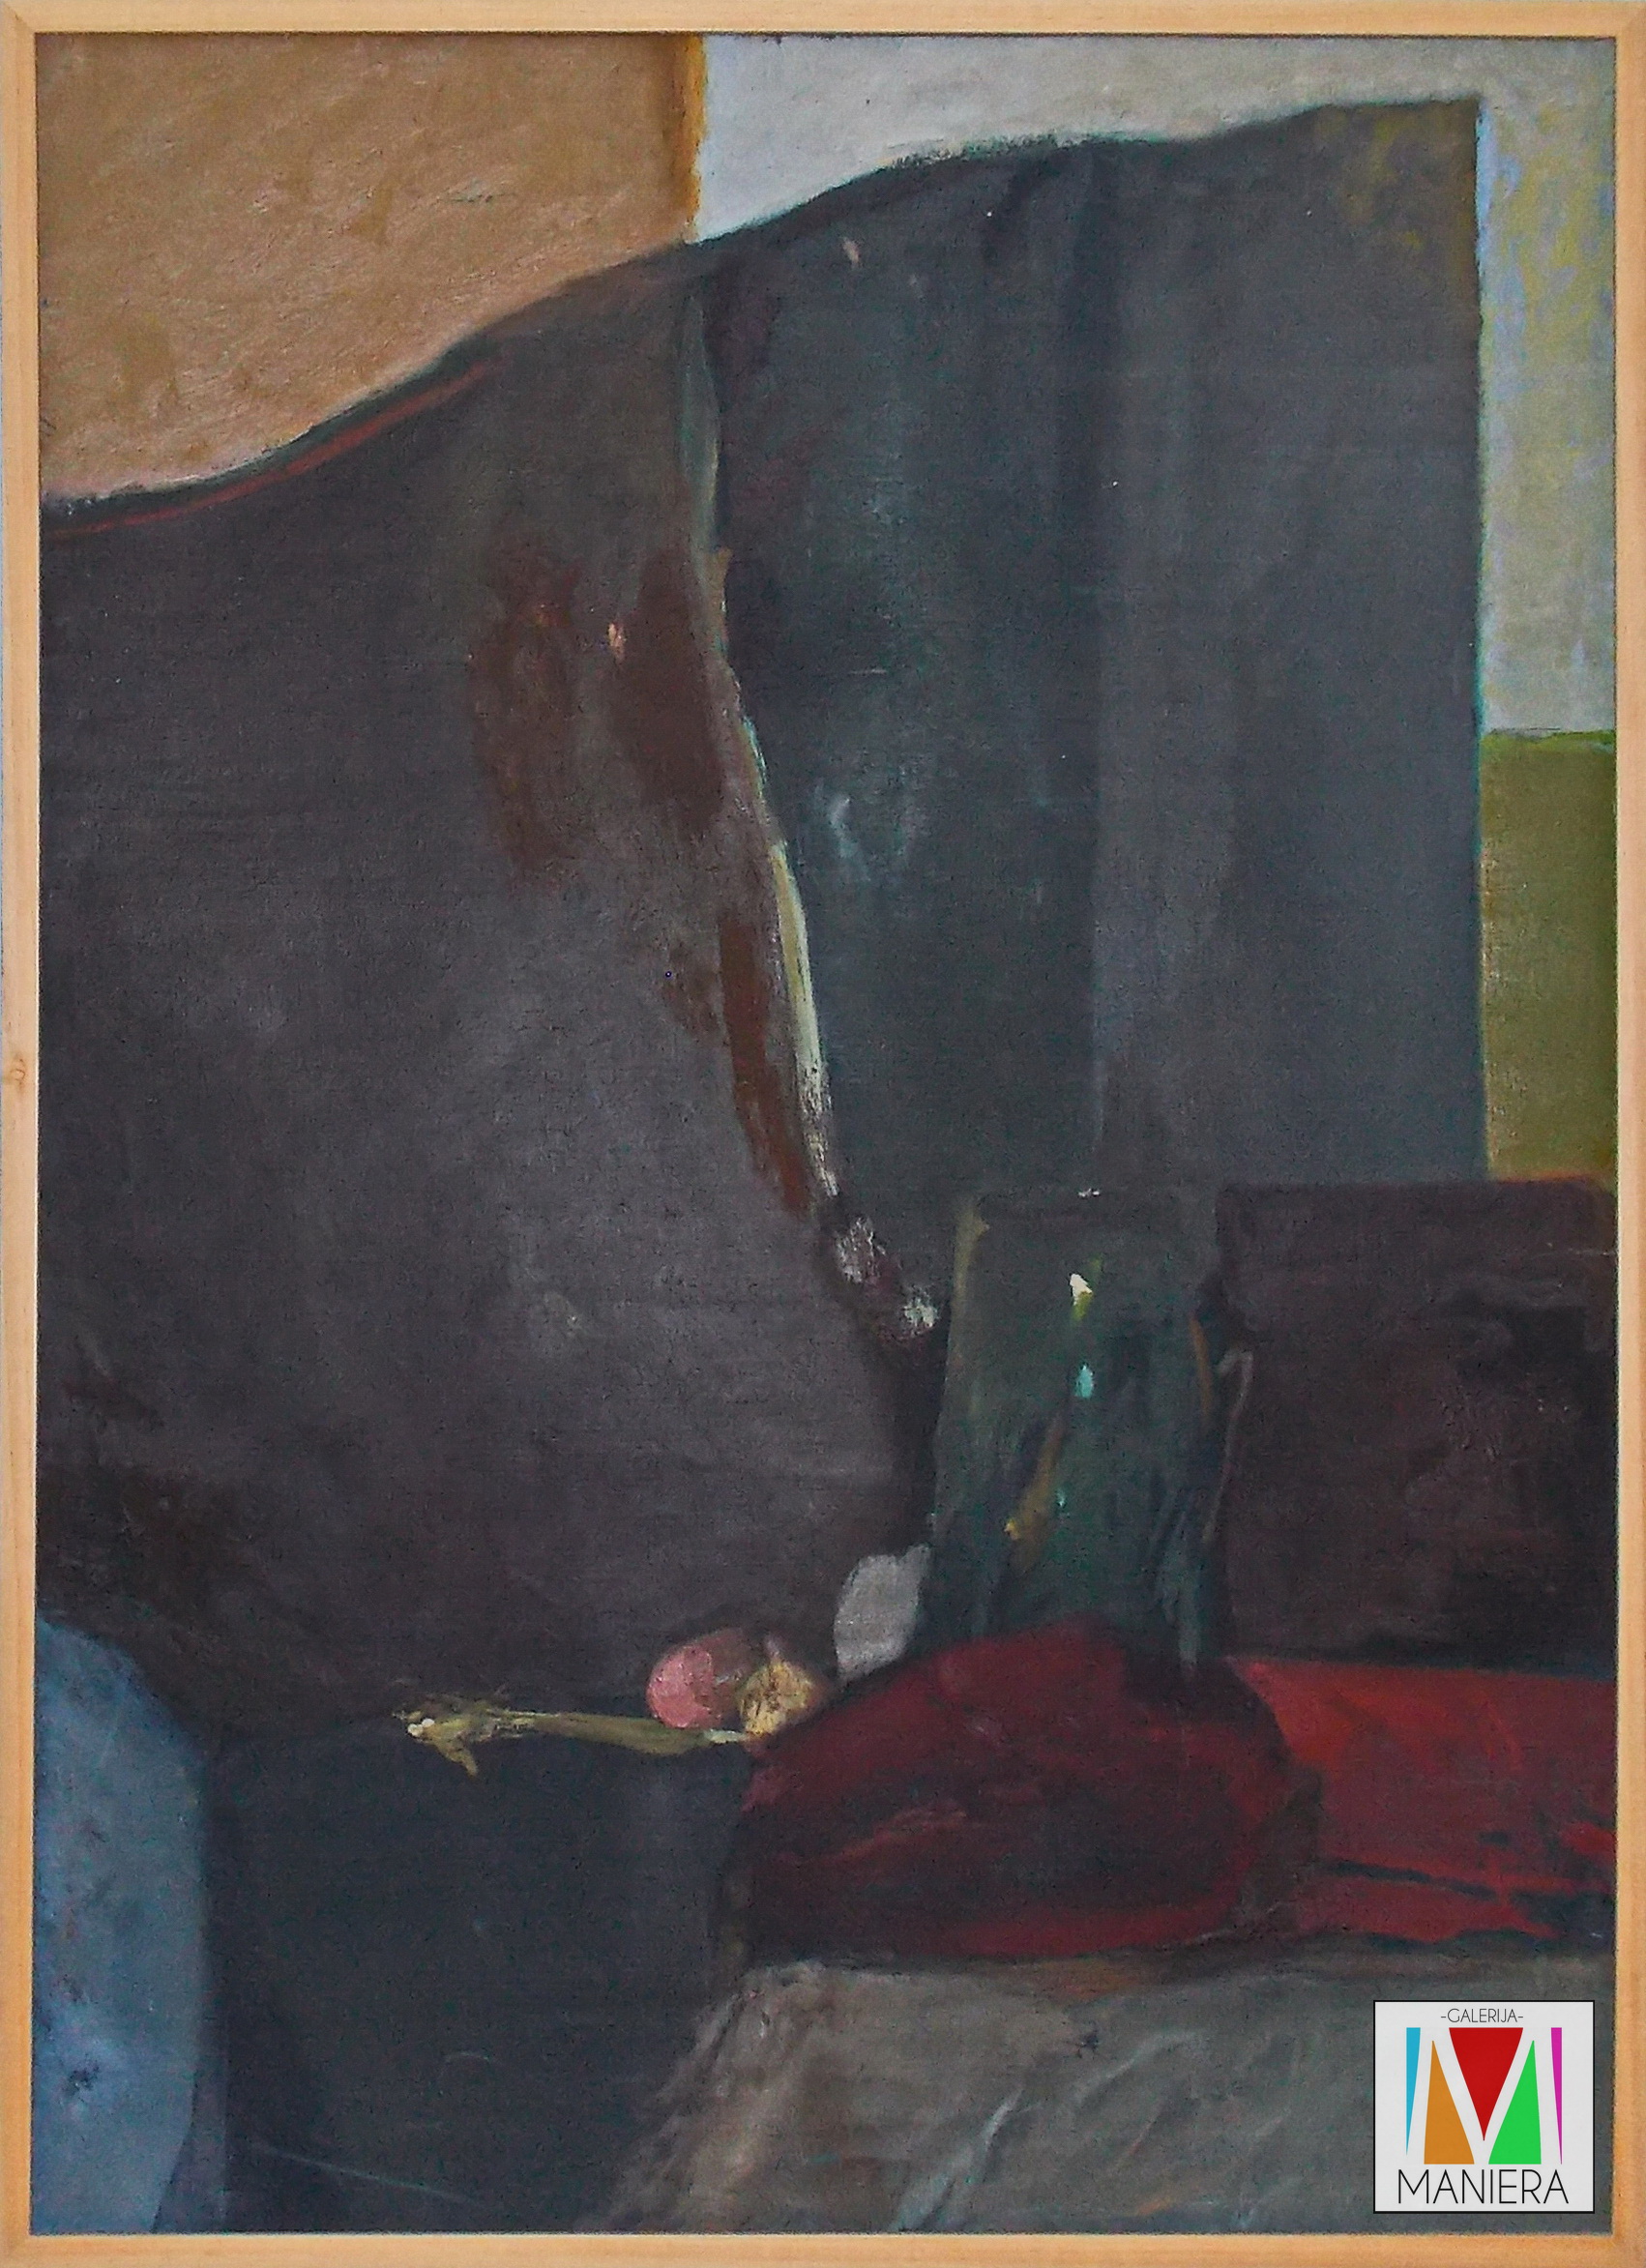 Marinko Benzon
Mrtva priroda
ulje na platnu
115×82 cm
Oko 1965.

I Privatna kolekcija I